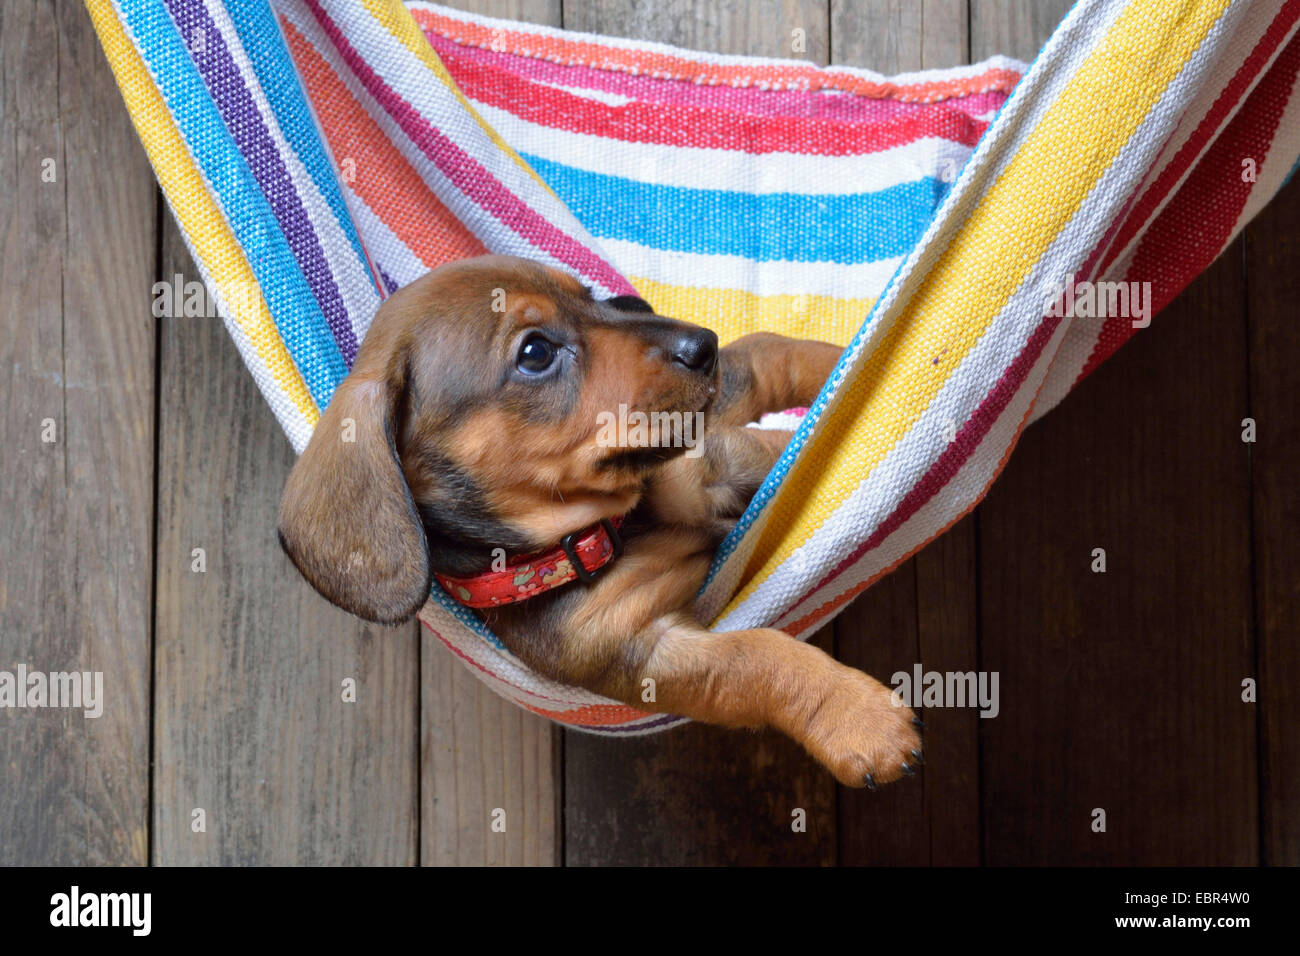 Teckel à poil court, à poil court, chien saucisse chien domestique (Canis lupus f. familiaris), dachshund puppy se détendre dans un hamac, Allemagne Banque D'Images